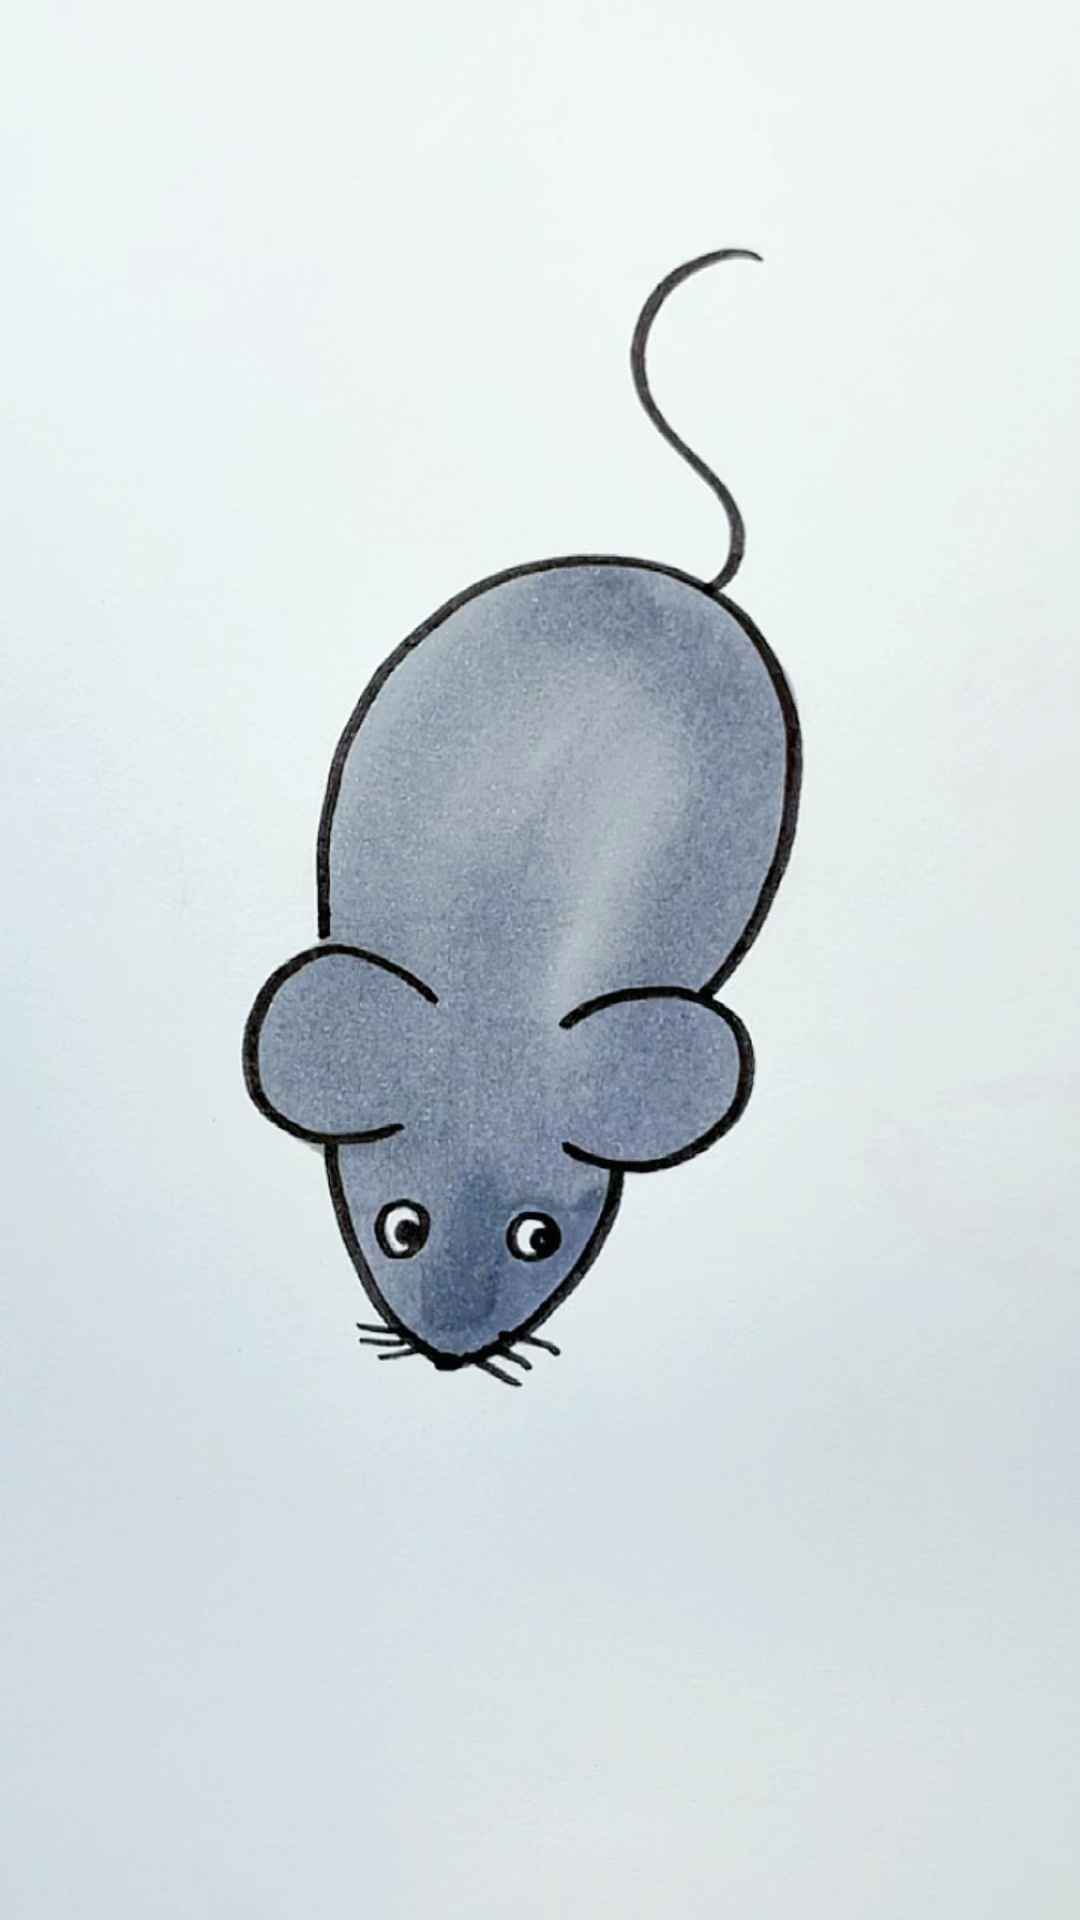 老鼠的画法简单又漂亮图片